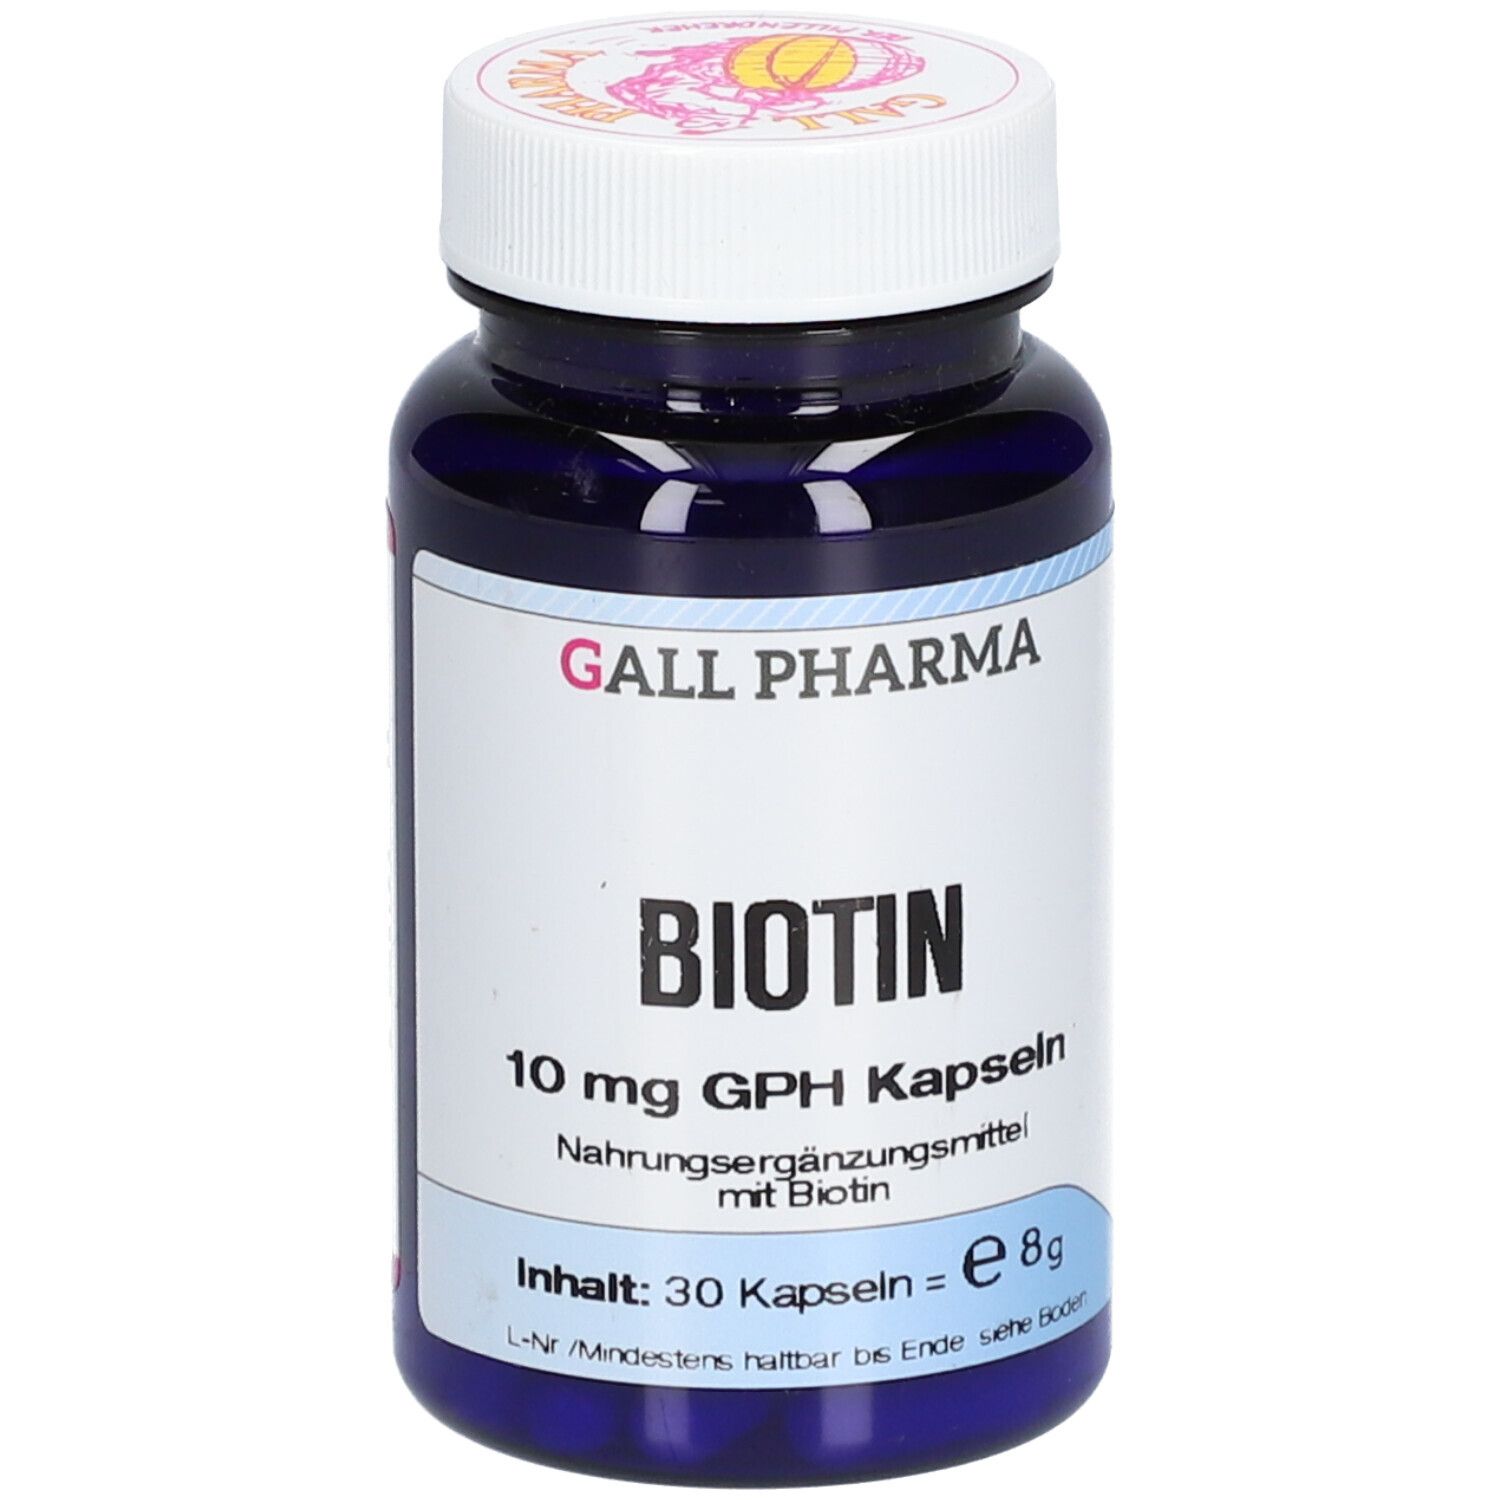 GALL PHARMA Biotin